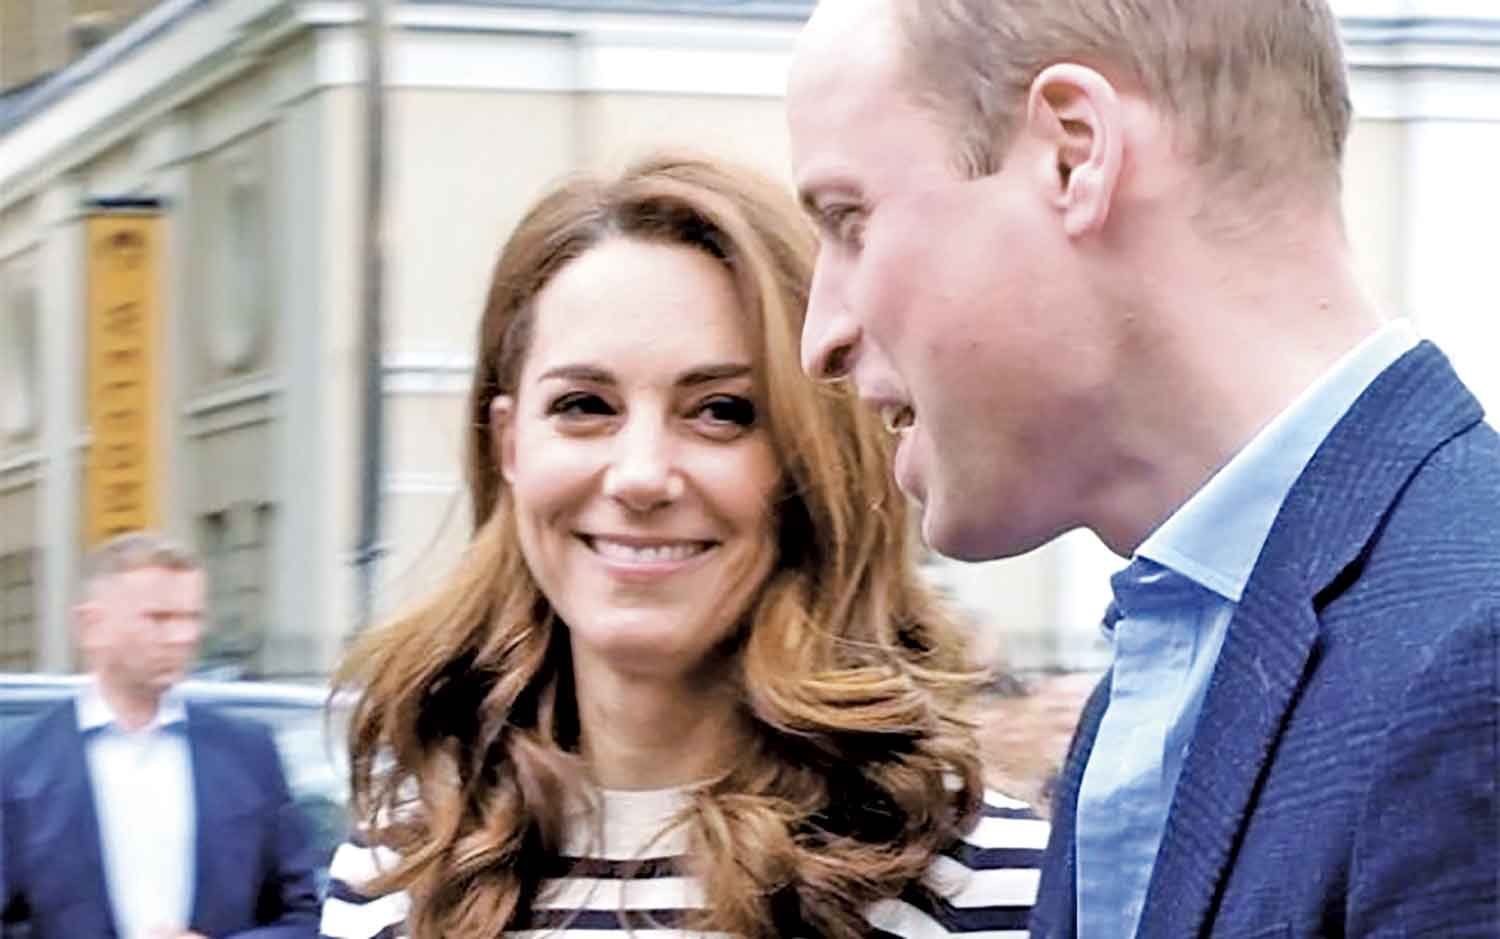 Imprensa especulada “iminente”  separação de William e Kate - Imagem 1